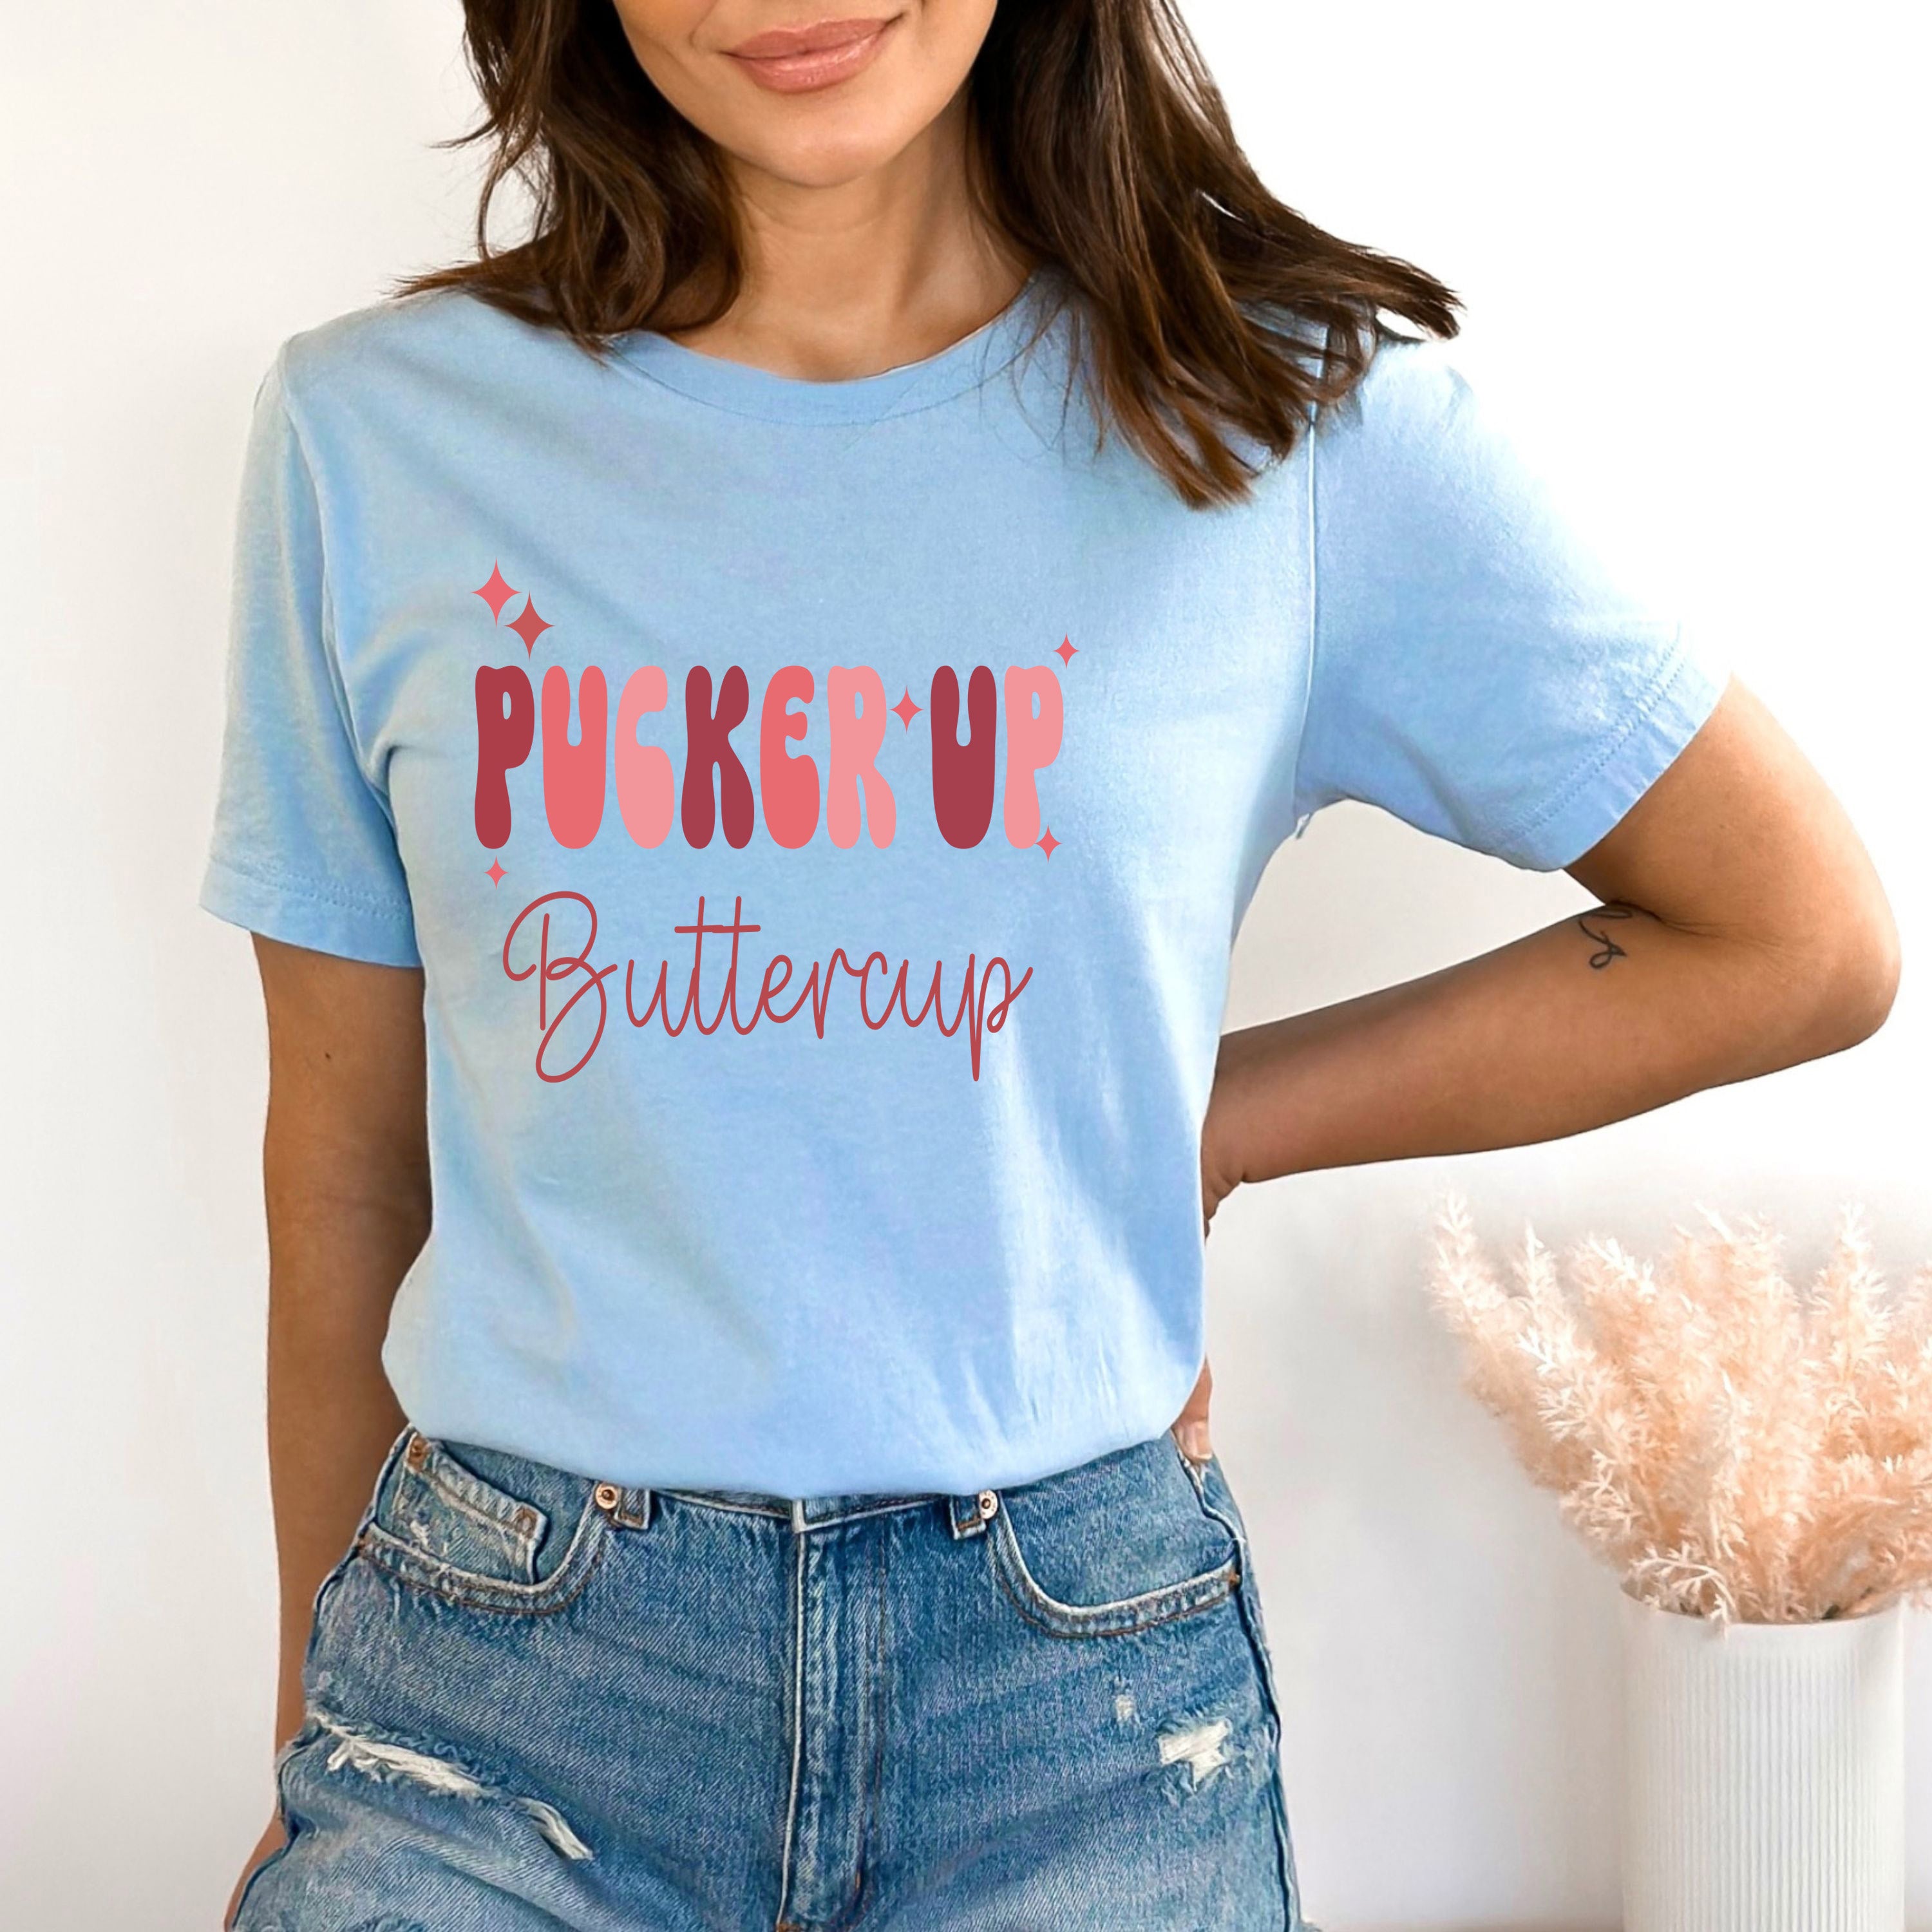 Pucker Up Buttercup - Bella canvas